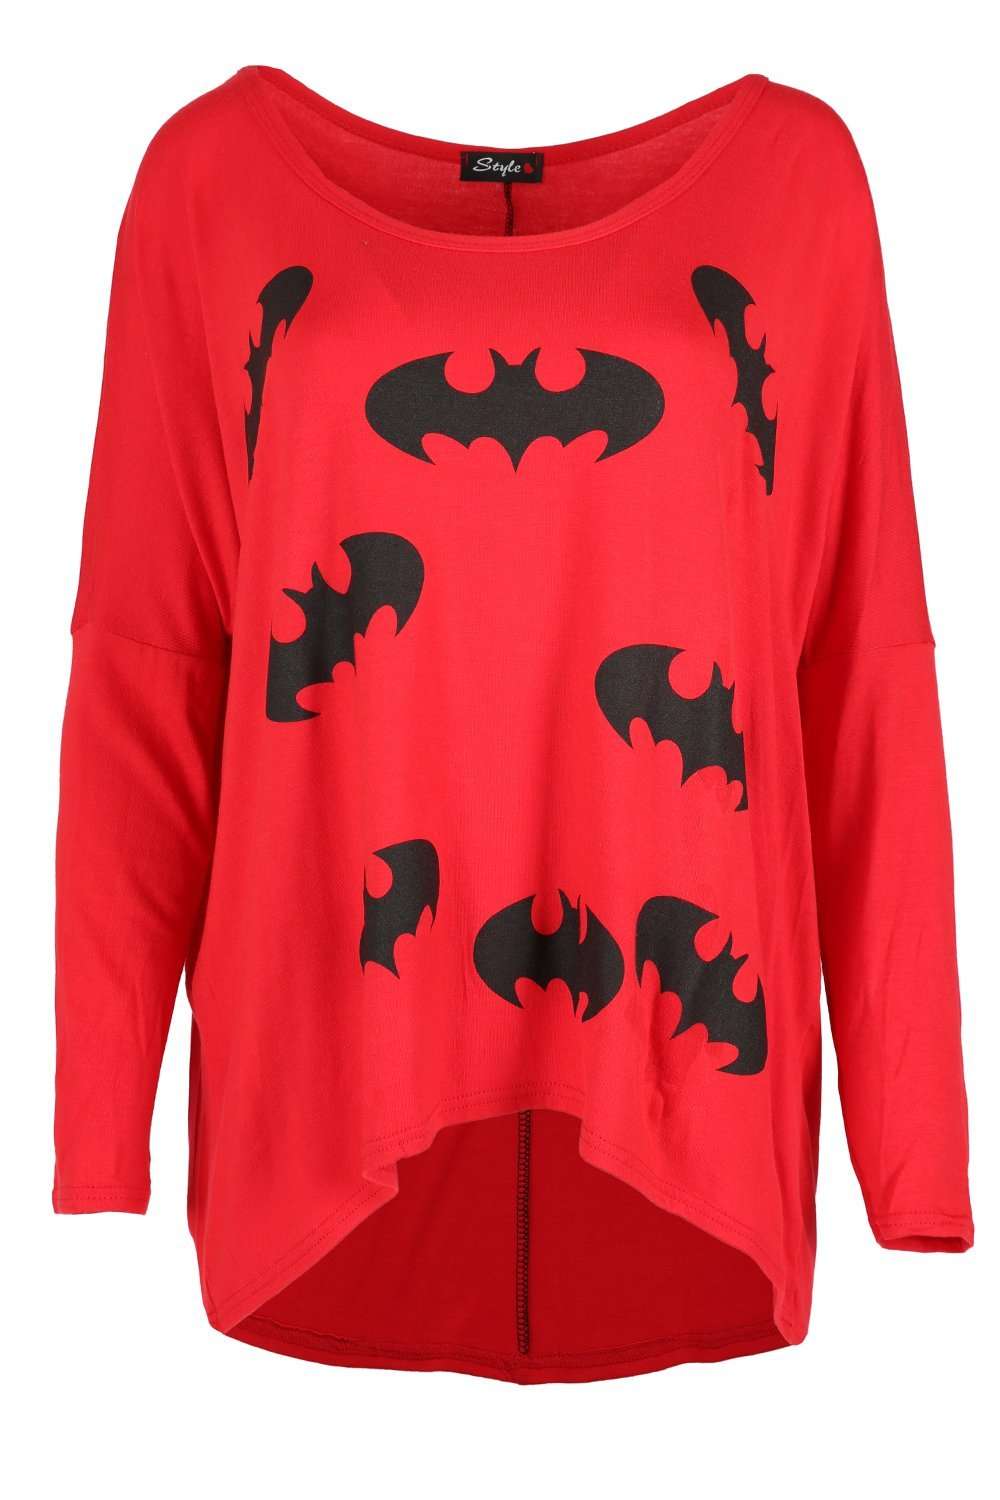 Vee Off Shoulder Bat Man Print Top - bejealous-com